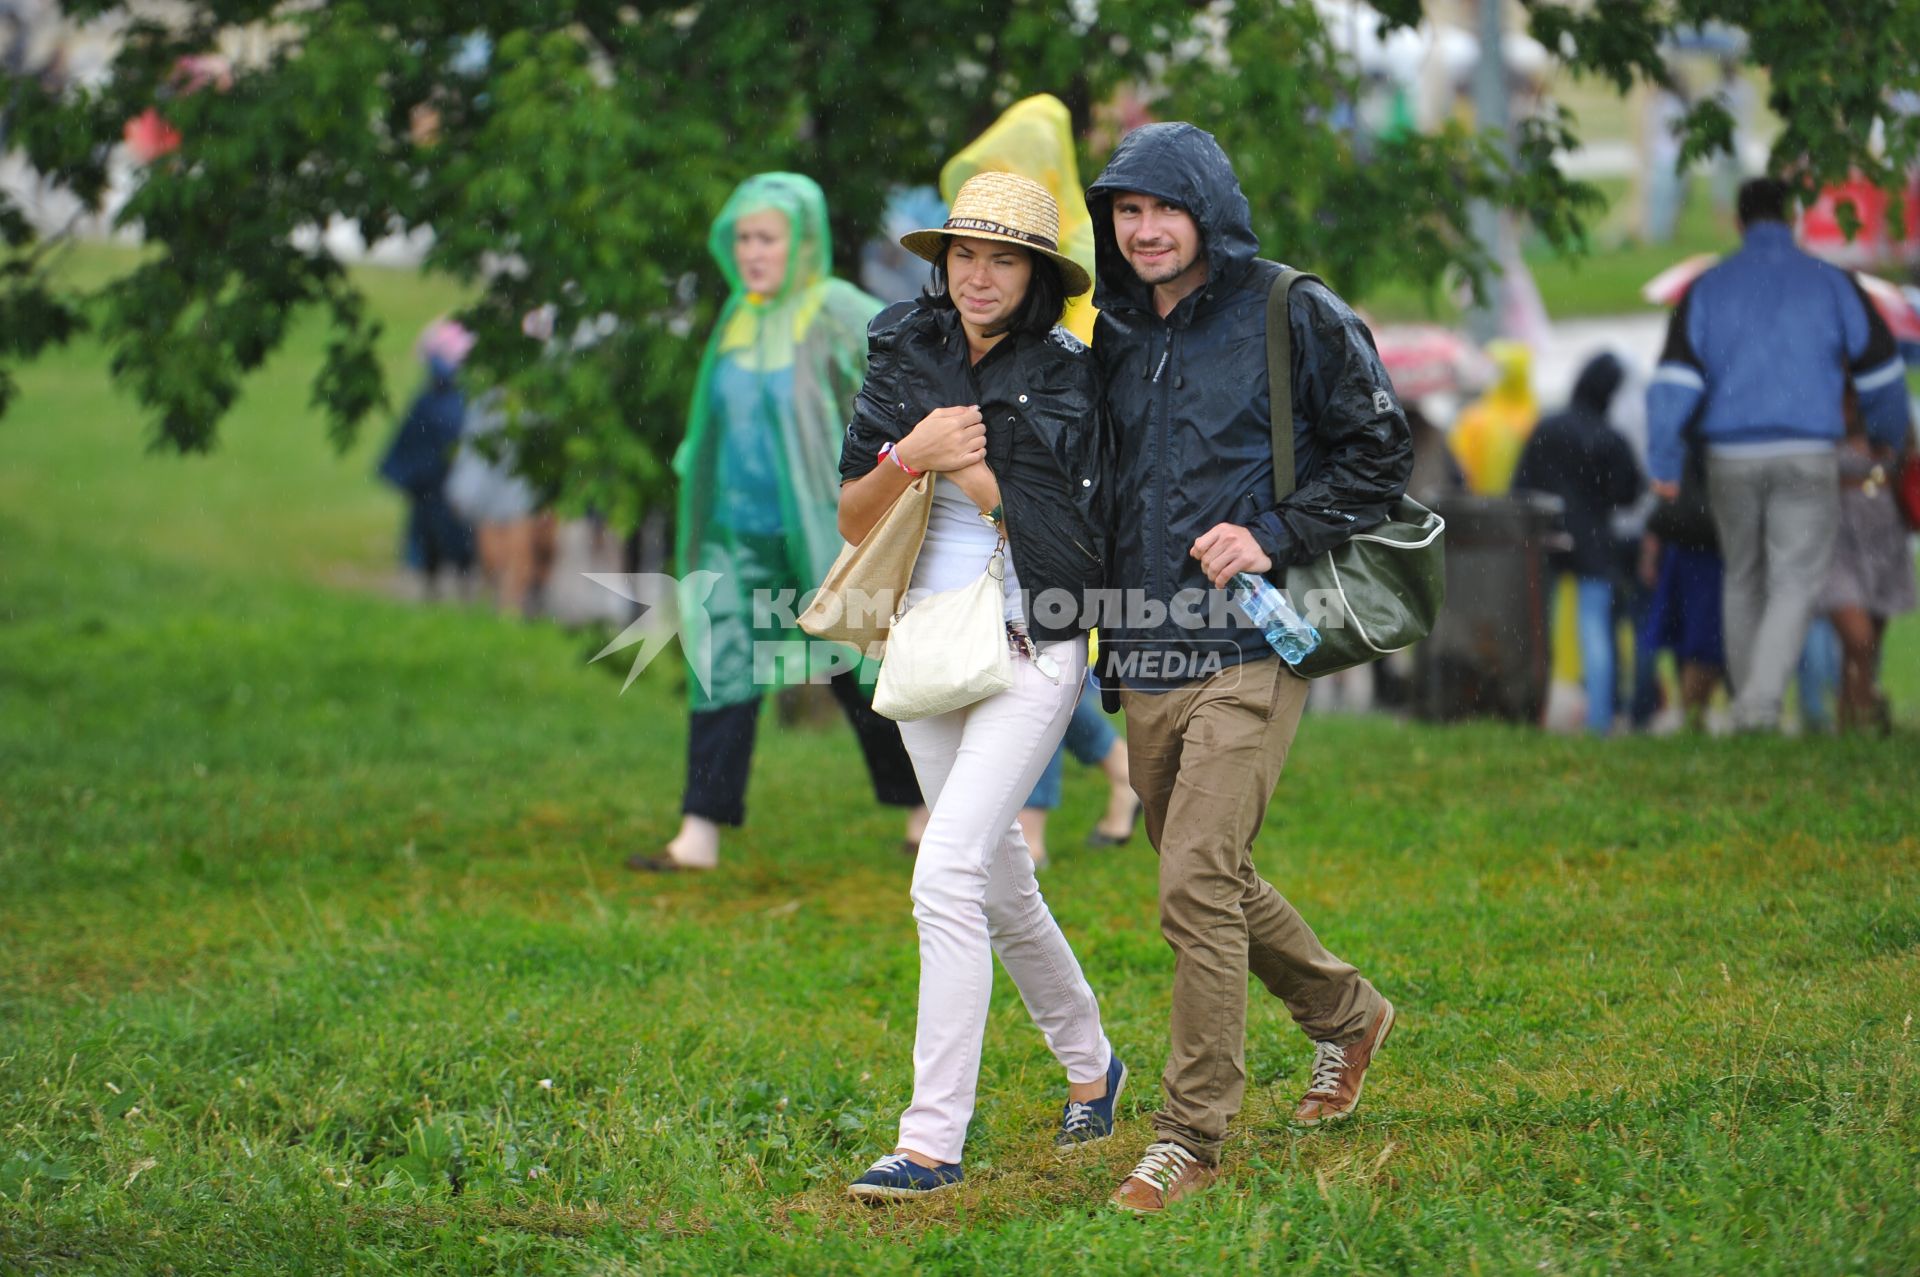 Коломенское. Фестиваль Пикник `Афиши`. На снимке: посетители фестиваля под дождем.